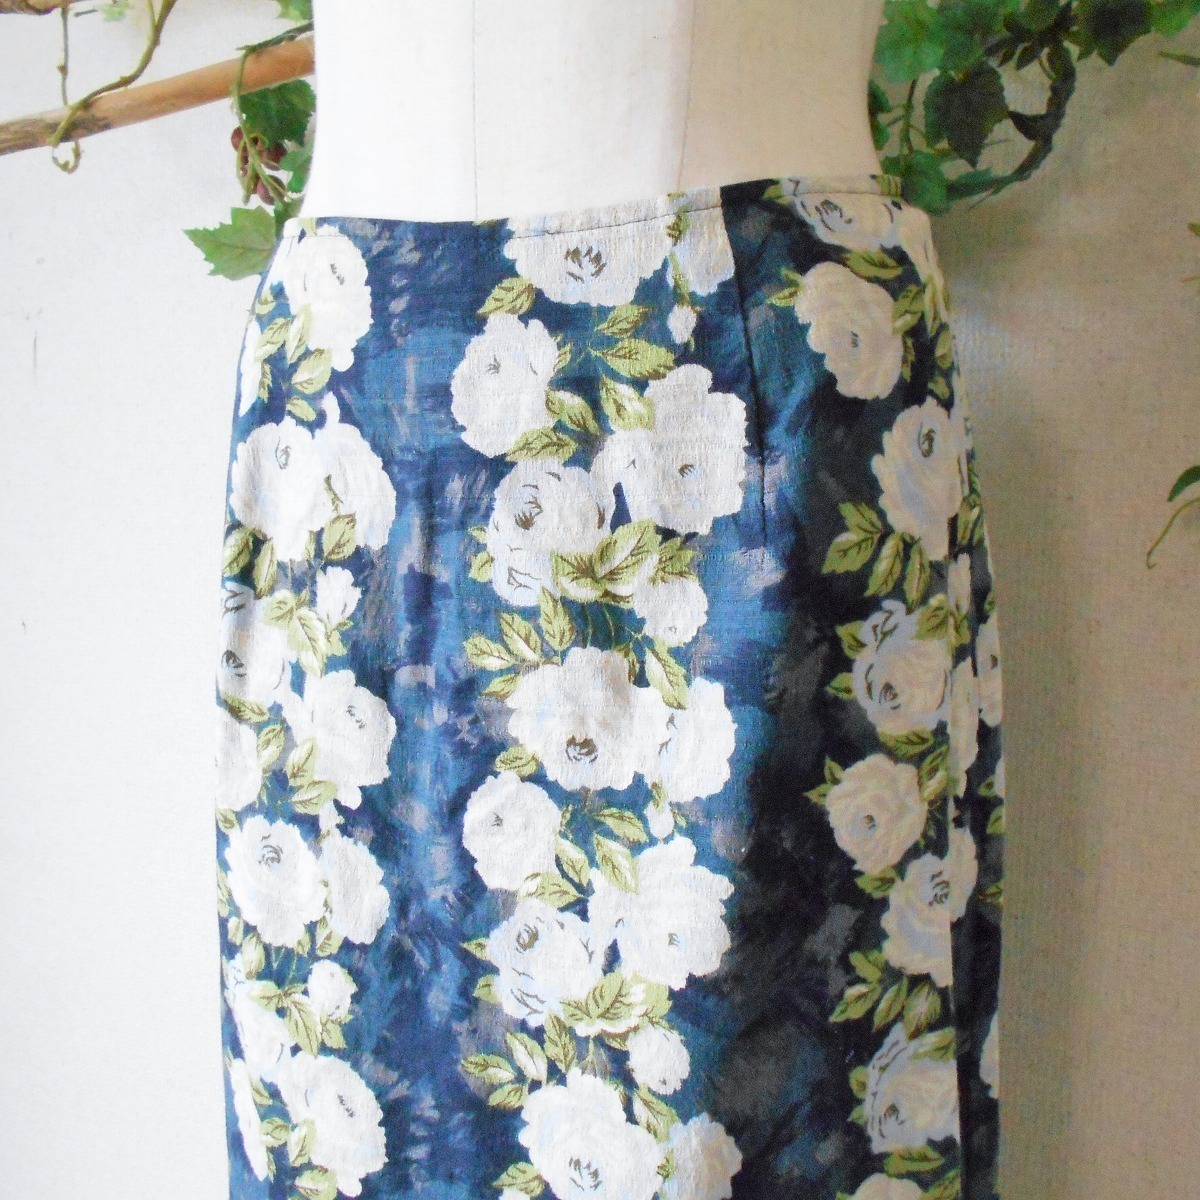  L'Est Rose LEST ROSE spring summer direction elegant floral print print knee height skirt made in Japan 